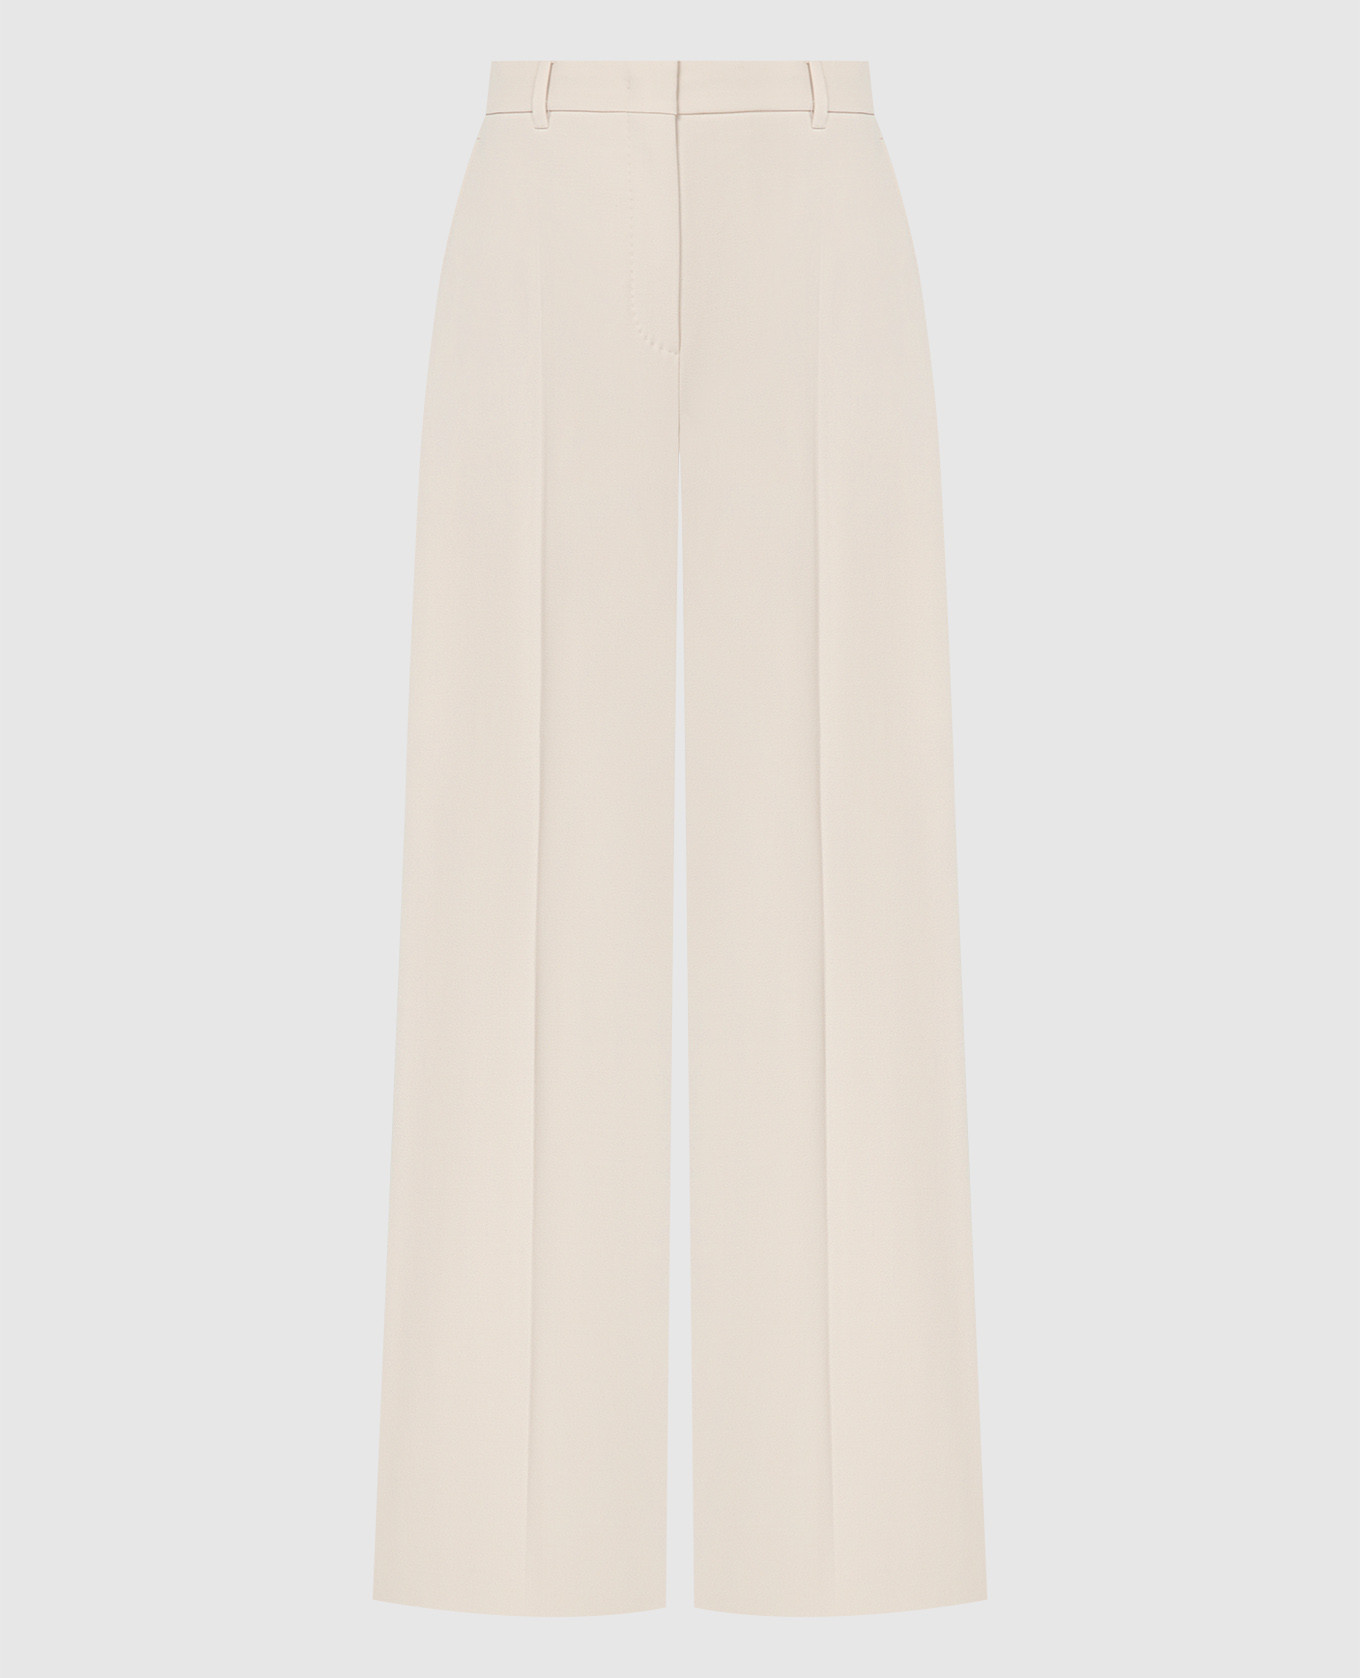 Agami beige wool pants